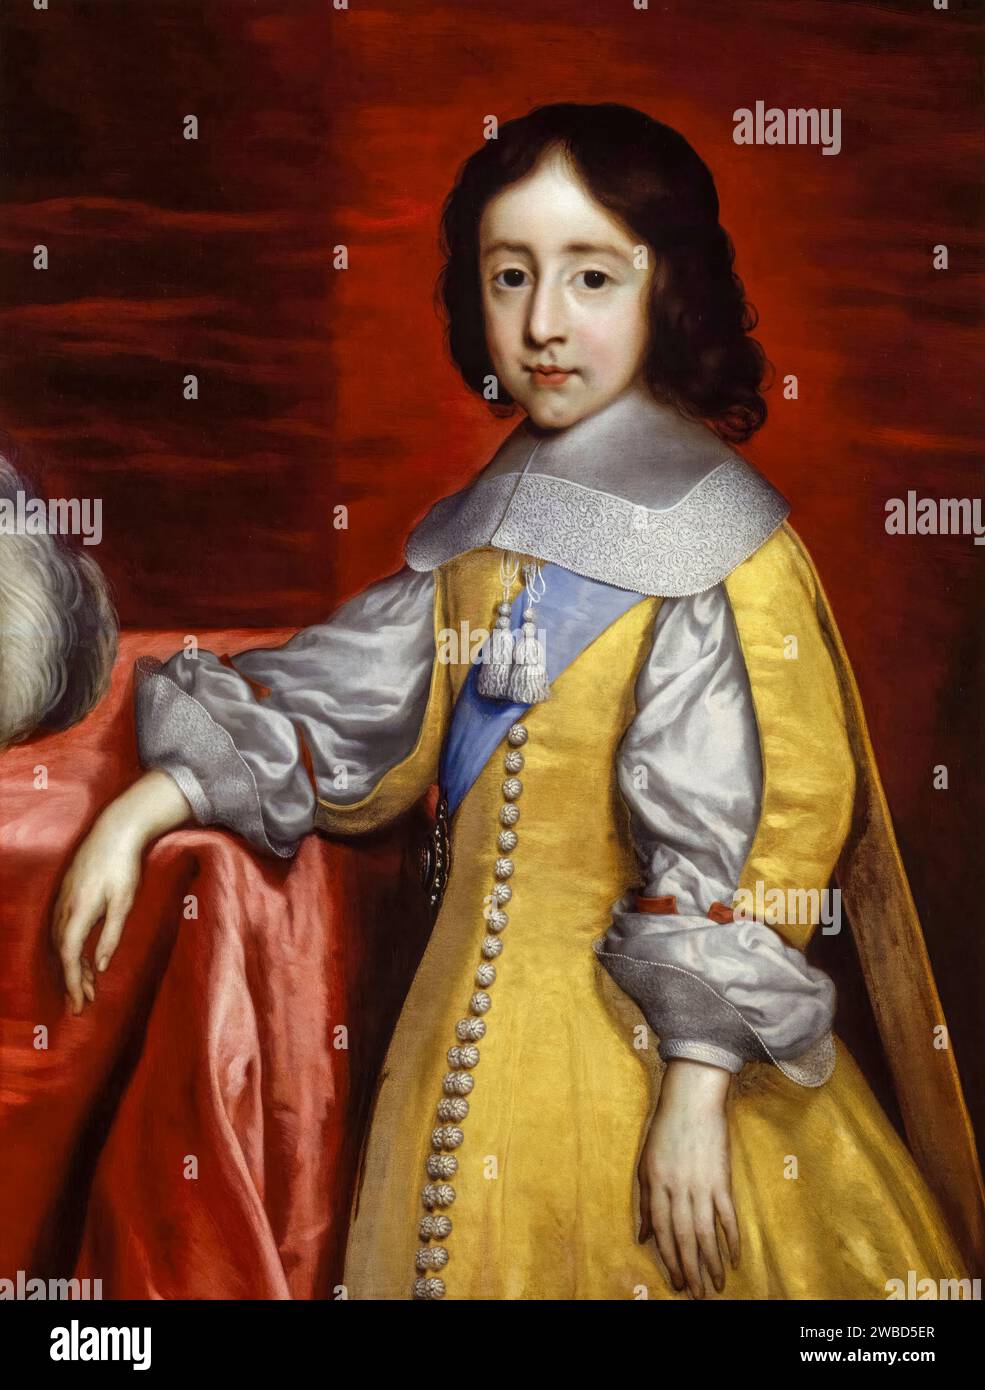 Guglielmo III d'Inghilterra, Principe d'Orange (1650-1702) da bambino, poi Re d'Inghilterra, Irlanda e Scozia, ritrattista ad olio su tela dopo Cornelius Johnson (Cornelis Janssens van Ceulen), prima del 1699 Foto Stock